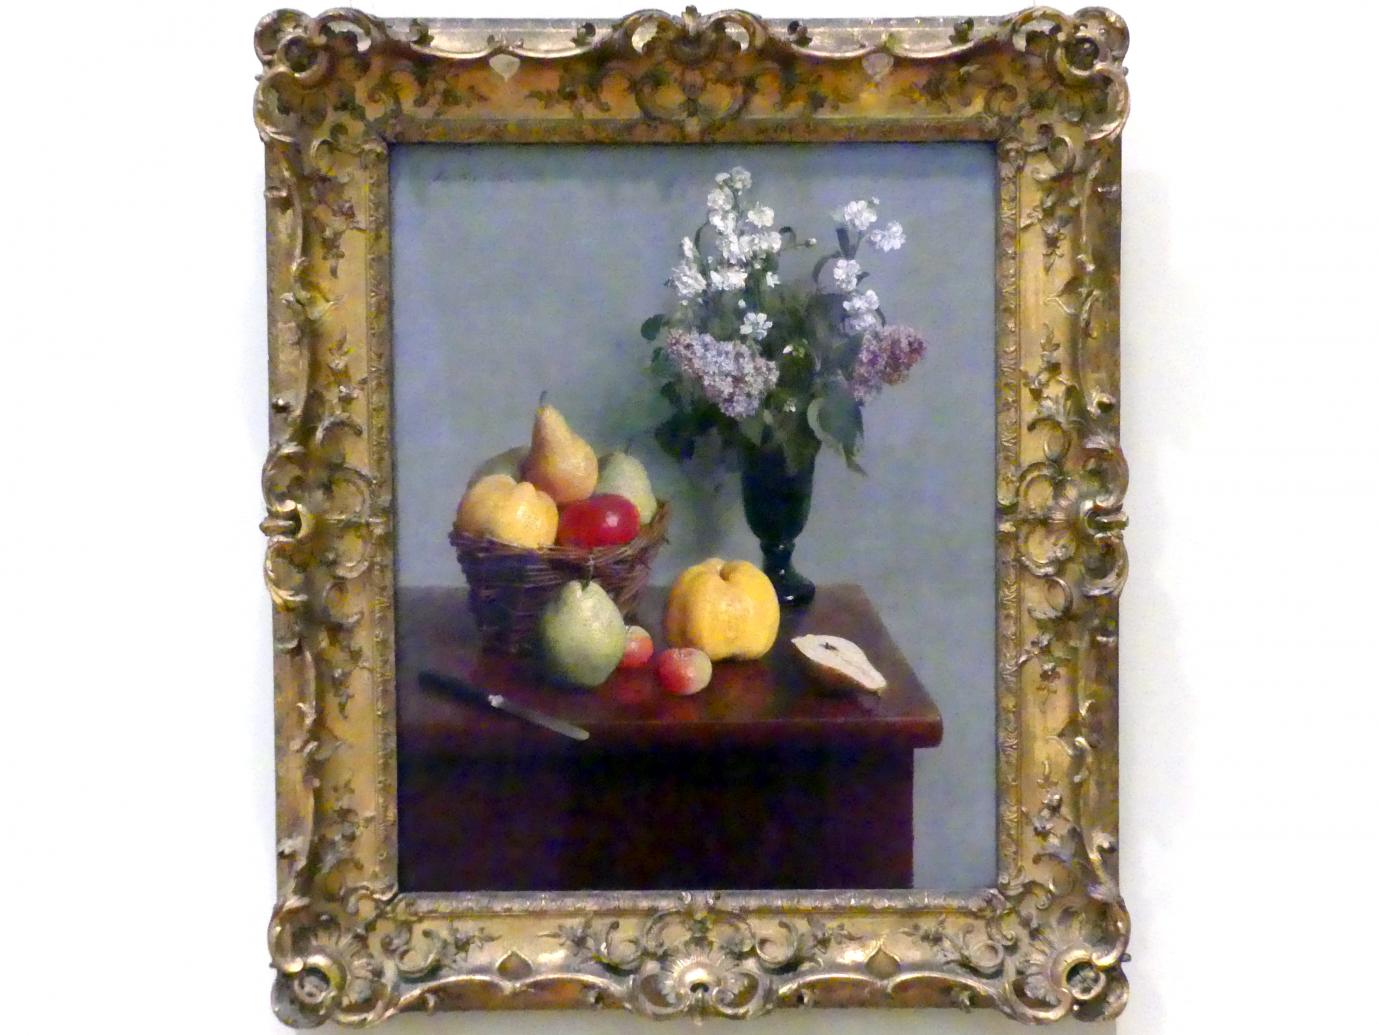 Henri Fantin-Latour: Stillleben mit Blumen und Obst, 1866